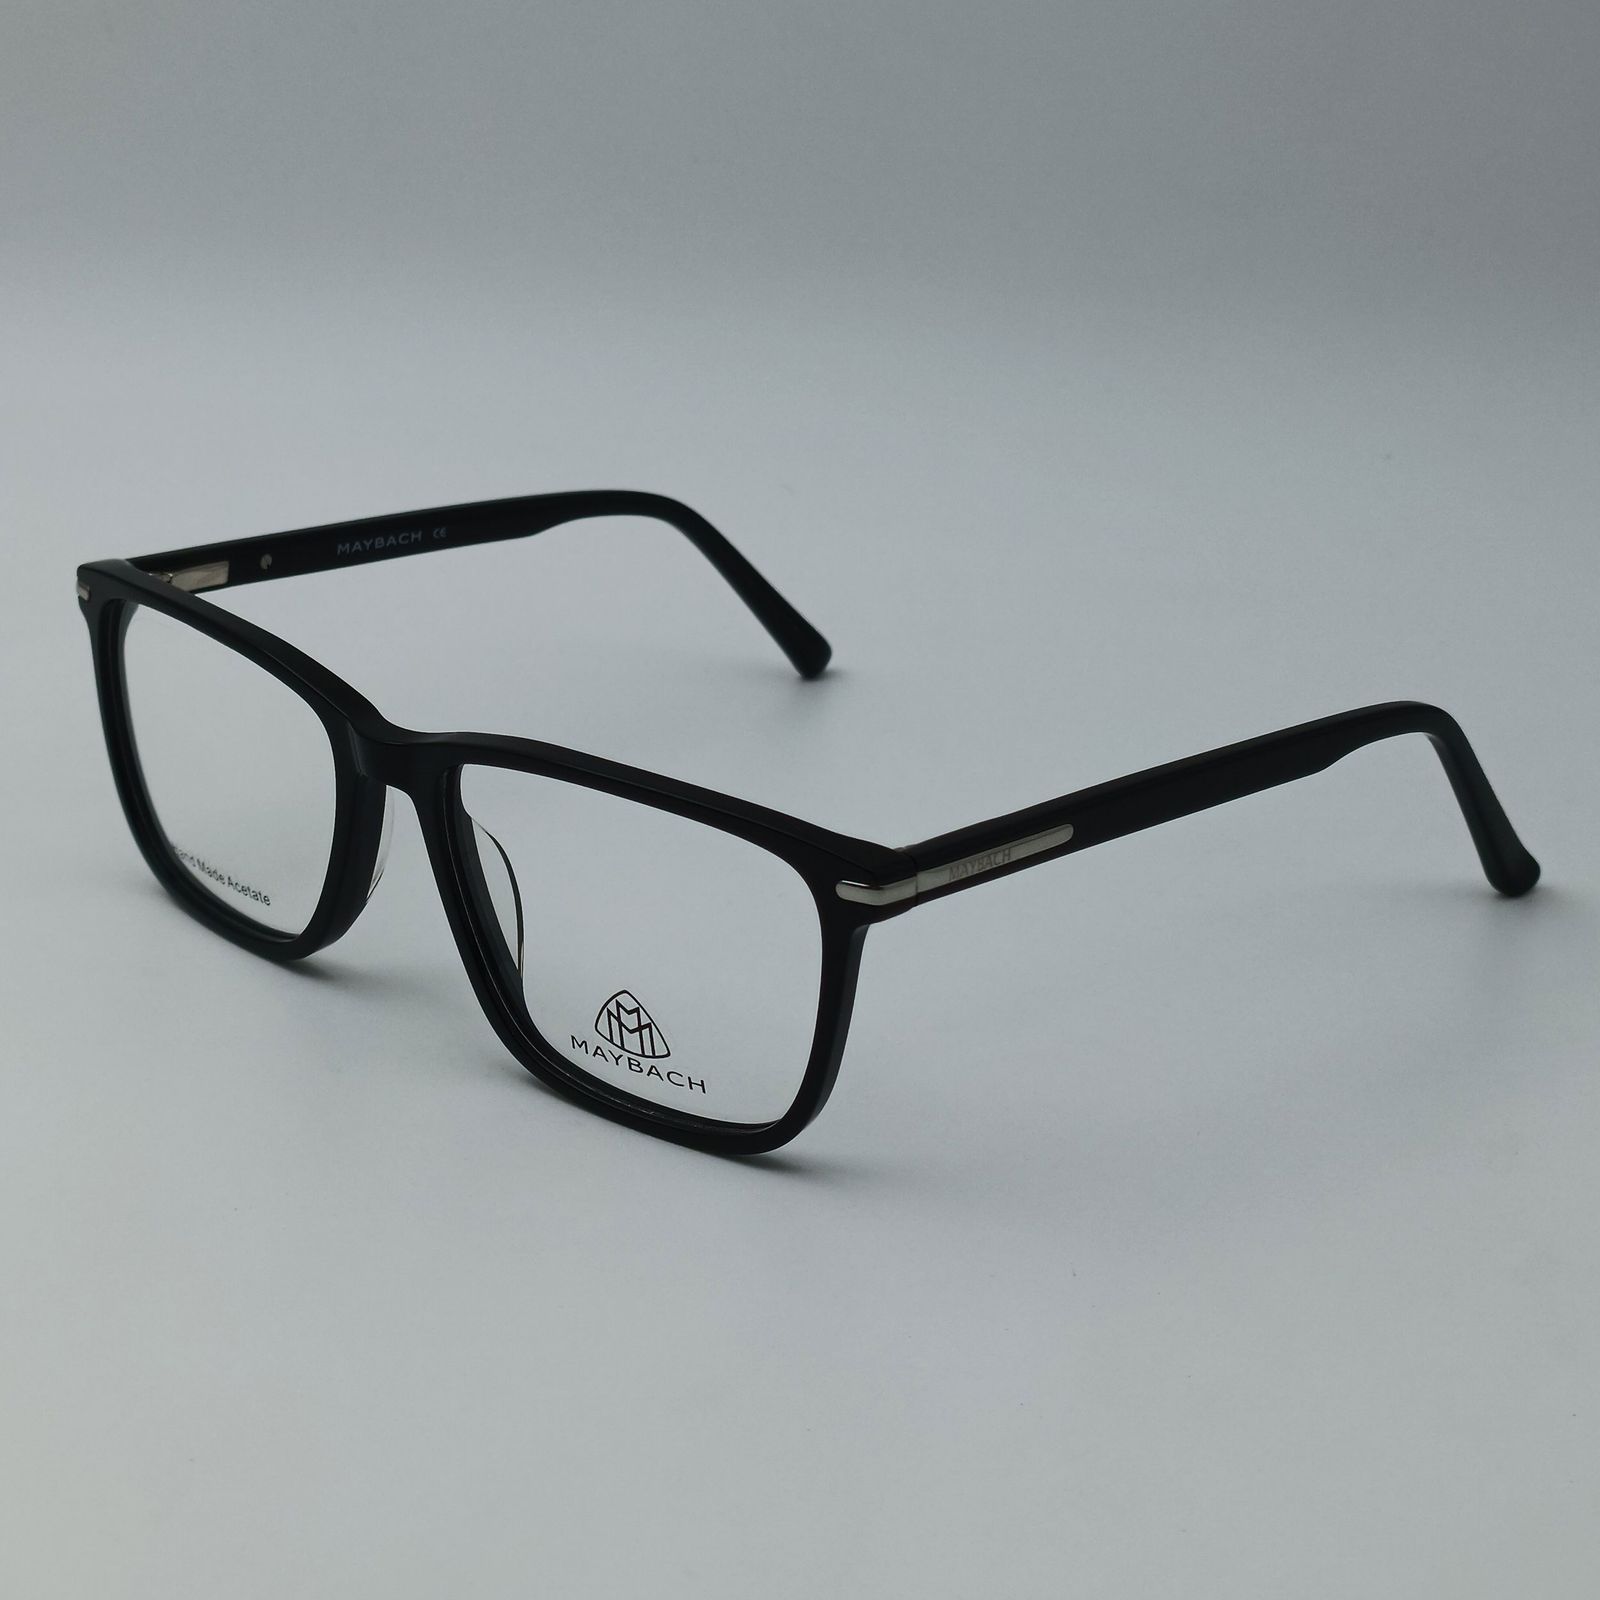 فریم عینک طبی میباخ مدل 6512 C1 -  - 3